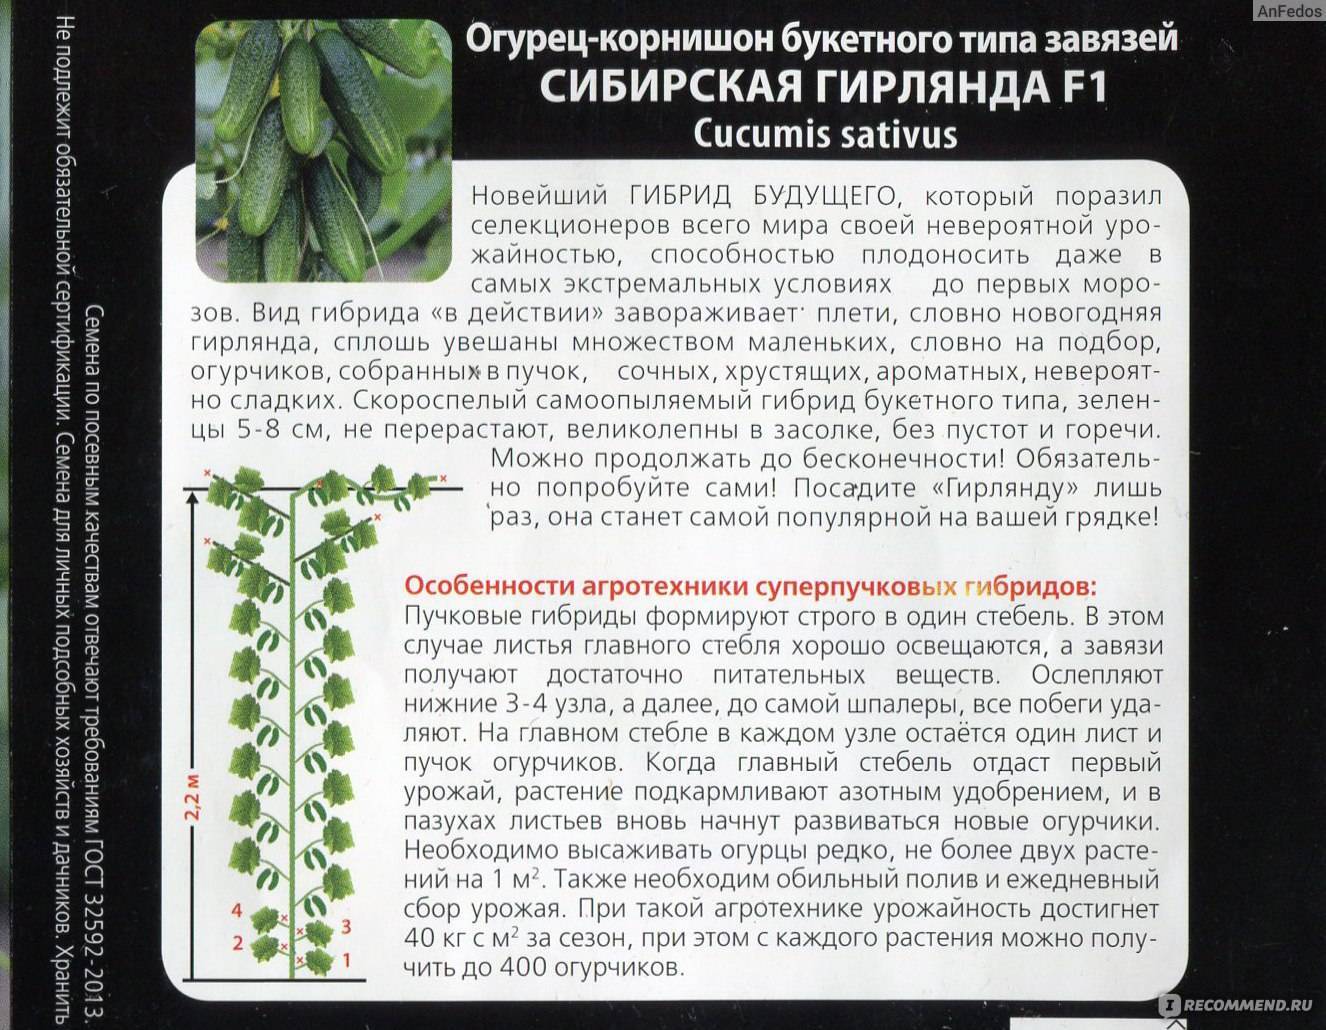 Огурец «сибирская гирлянда f1»: описание гибридного сорта, фото и отзывы